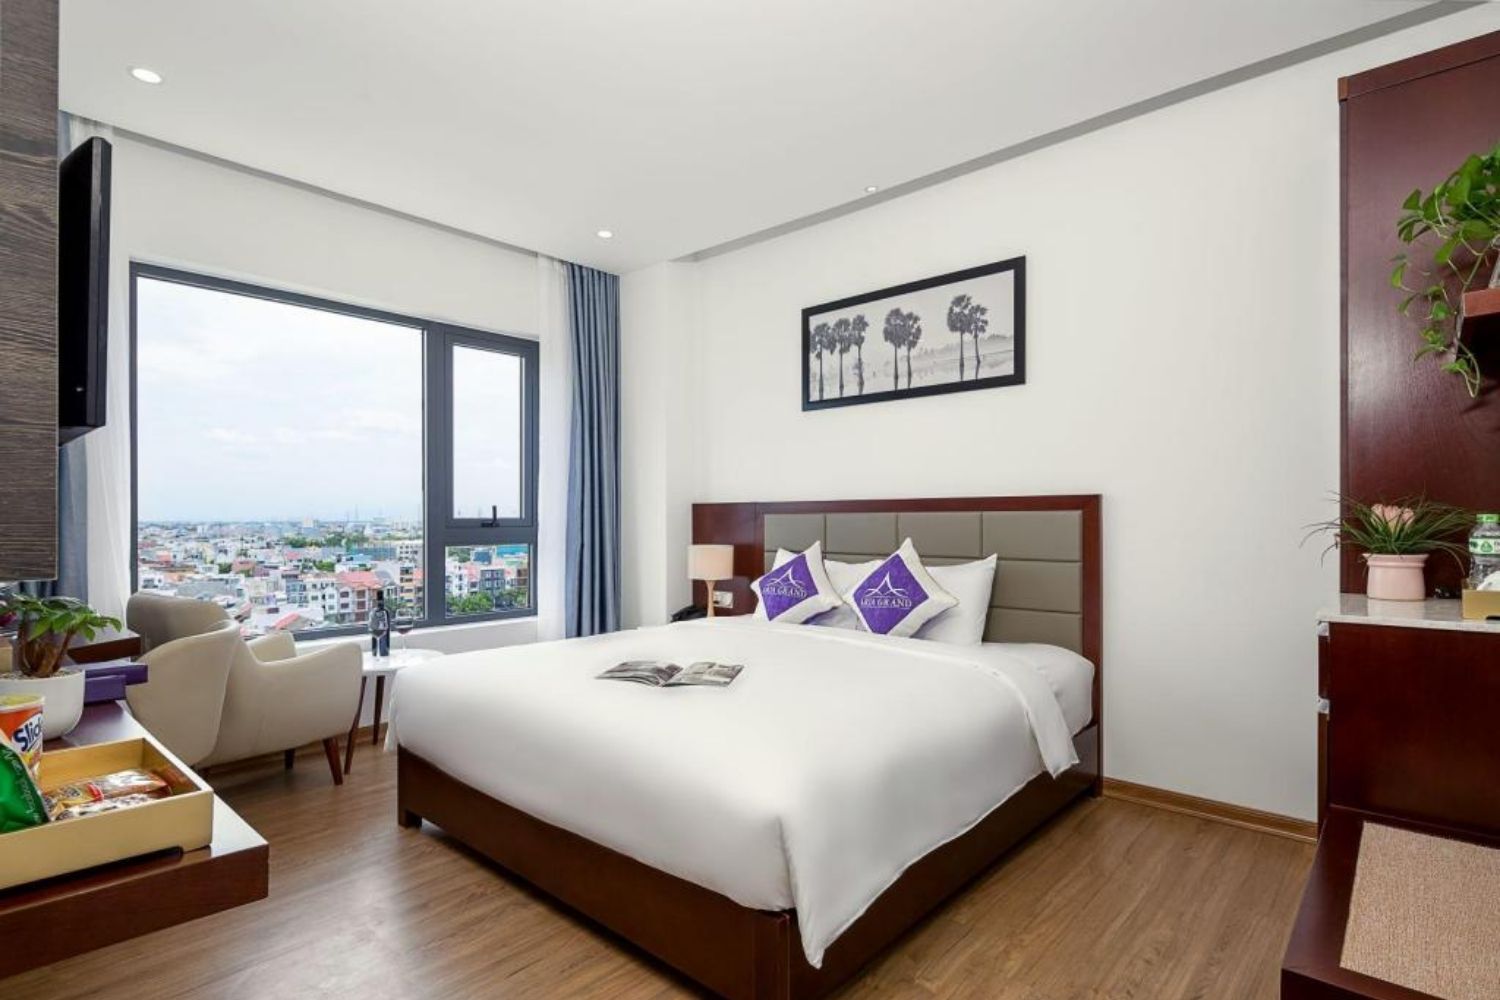 Đến Aria Hotel tận hưởng đẳng cấp khách sạn 4 sao bậc nhất tại Đà Nẵng 9